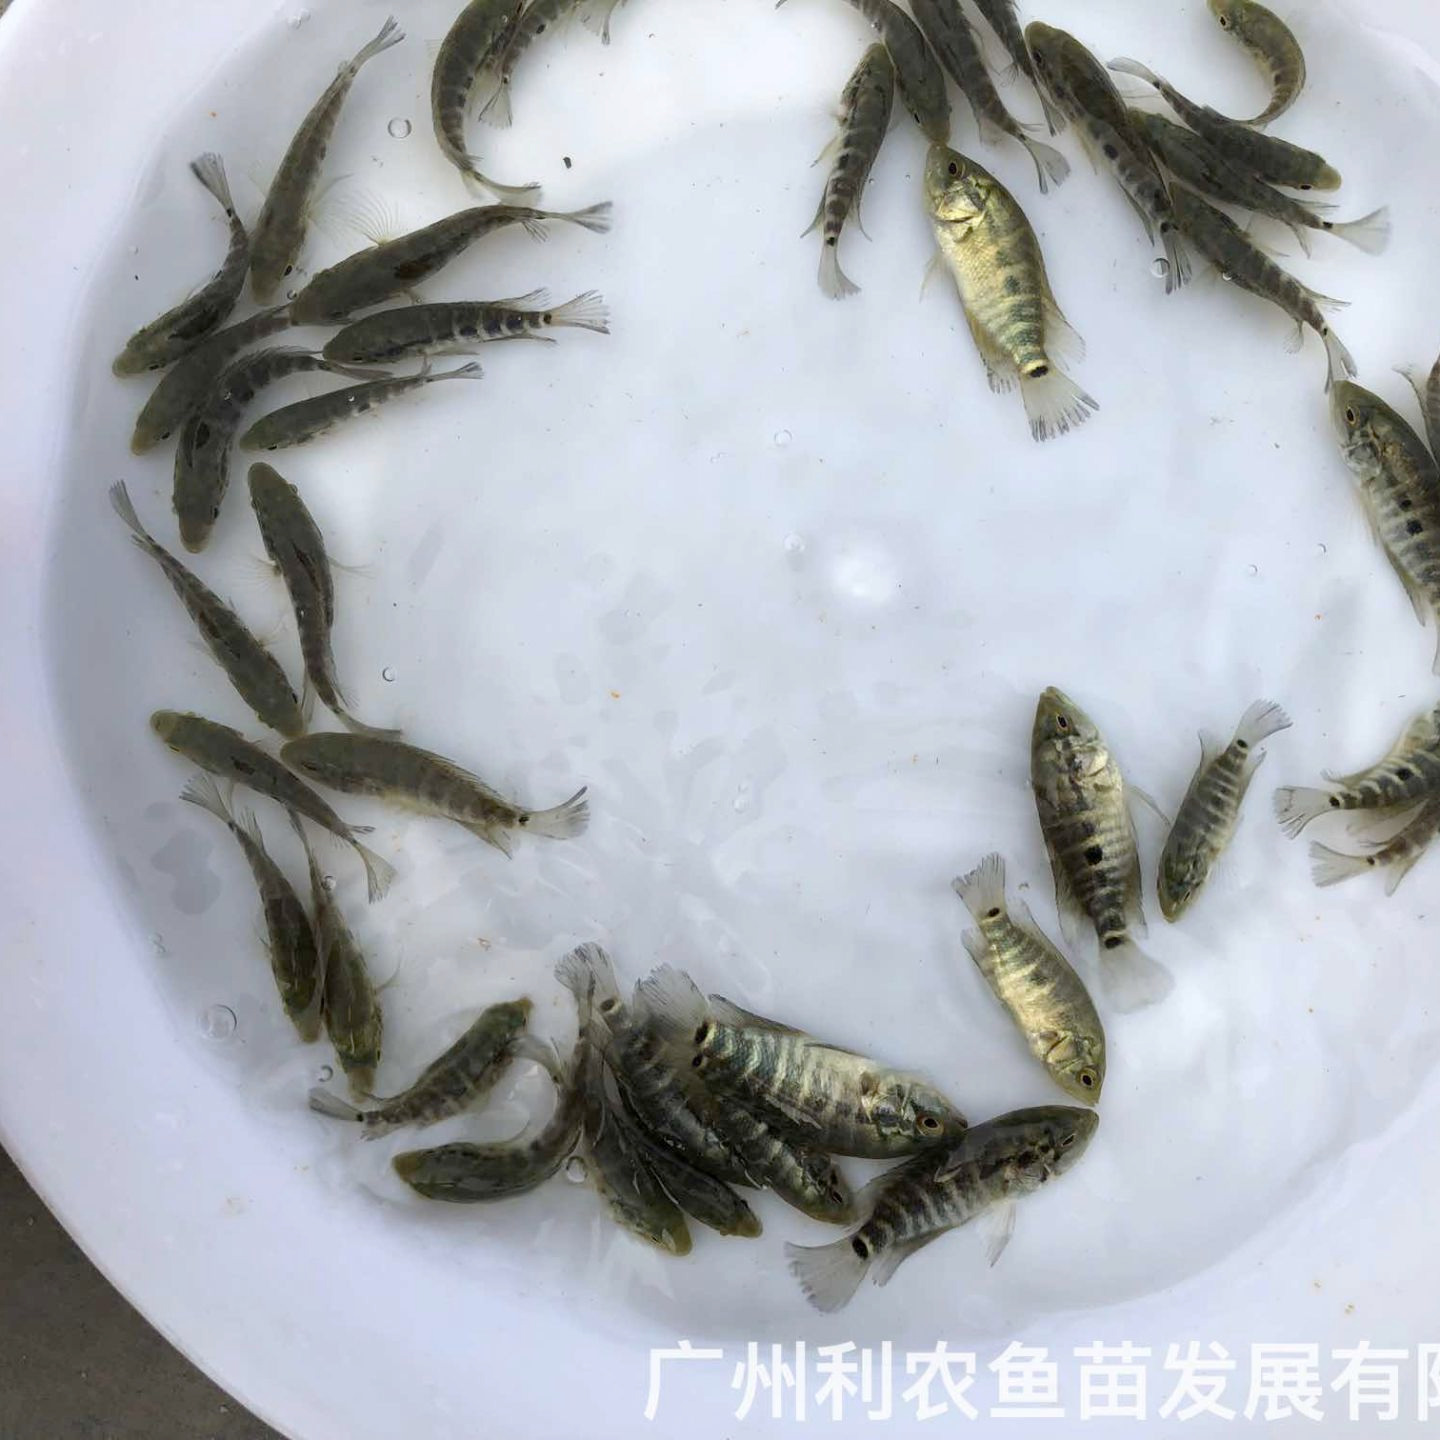 广东珠海淡水花斑鱼苗出售广东肇庆石斑鱼苗批发价格